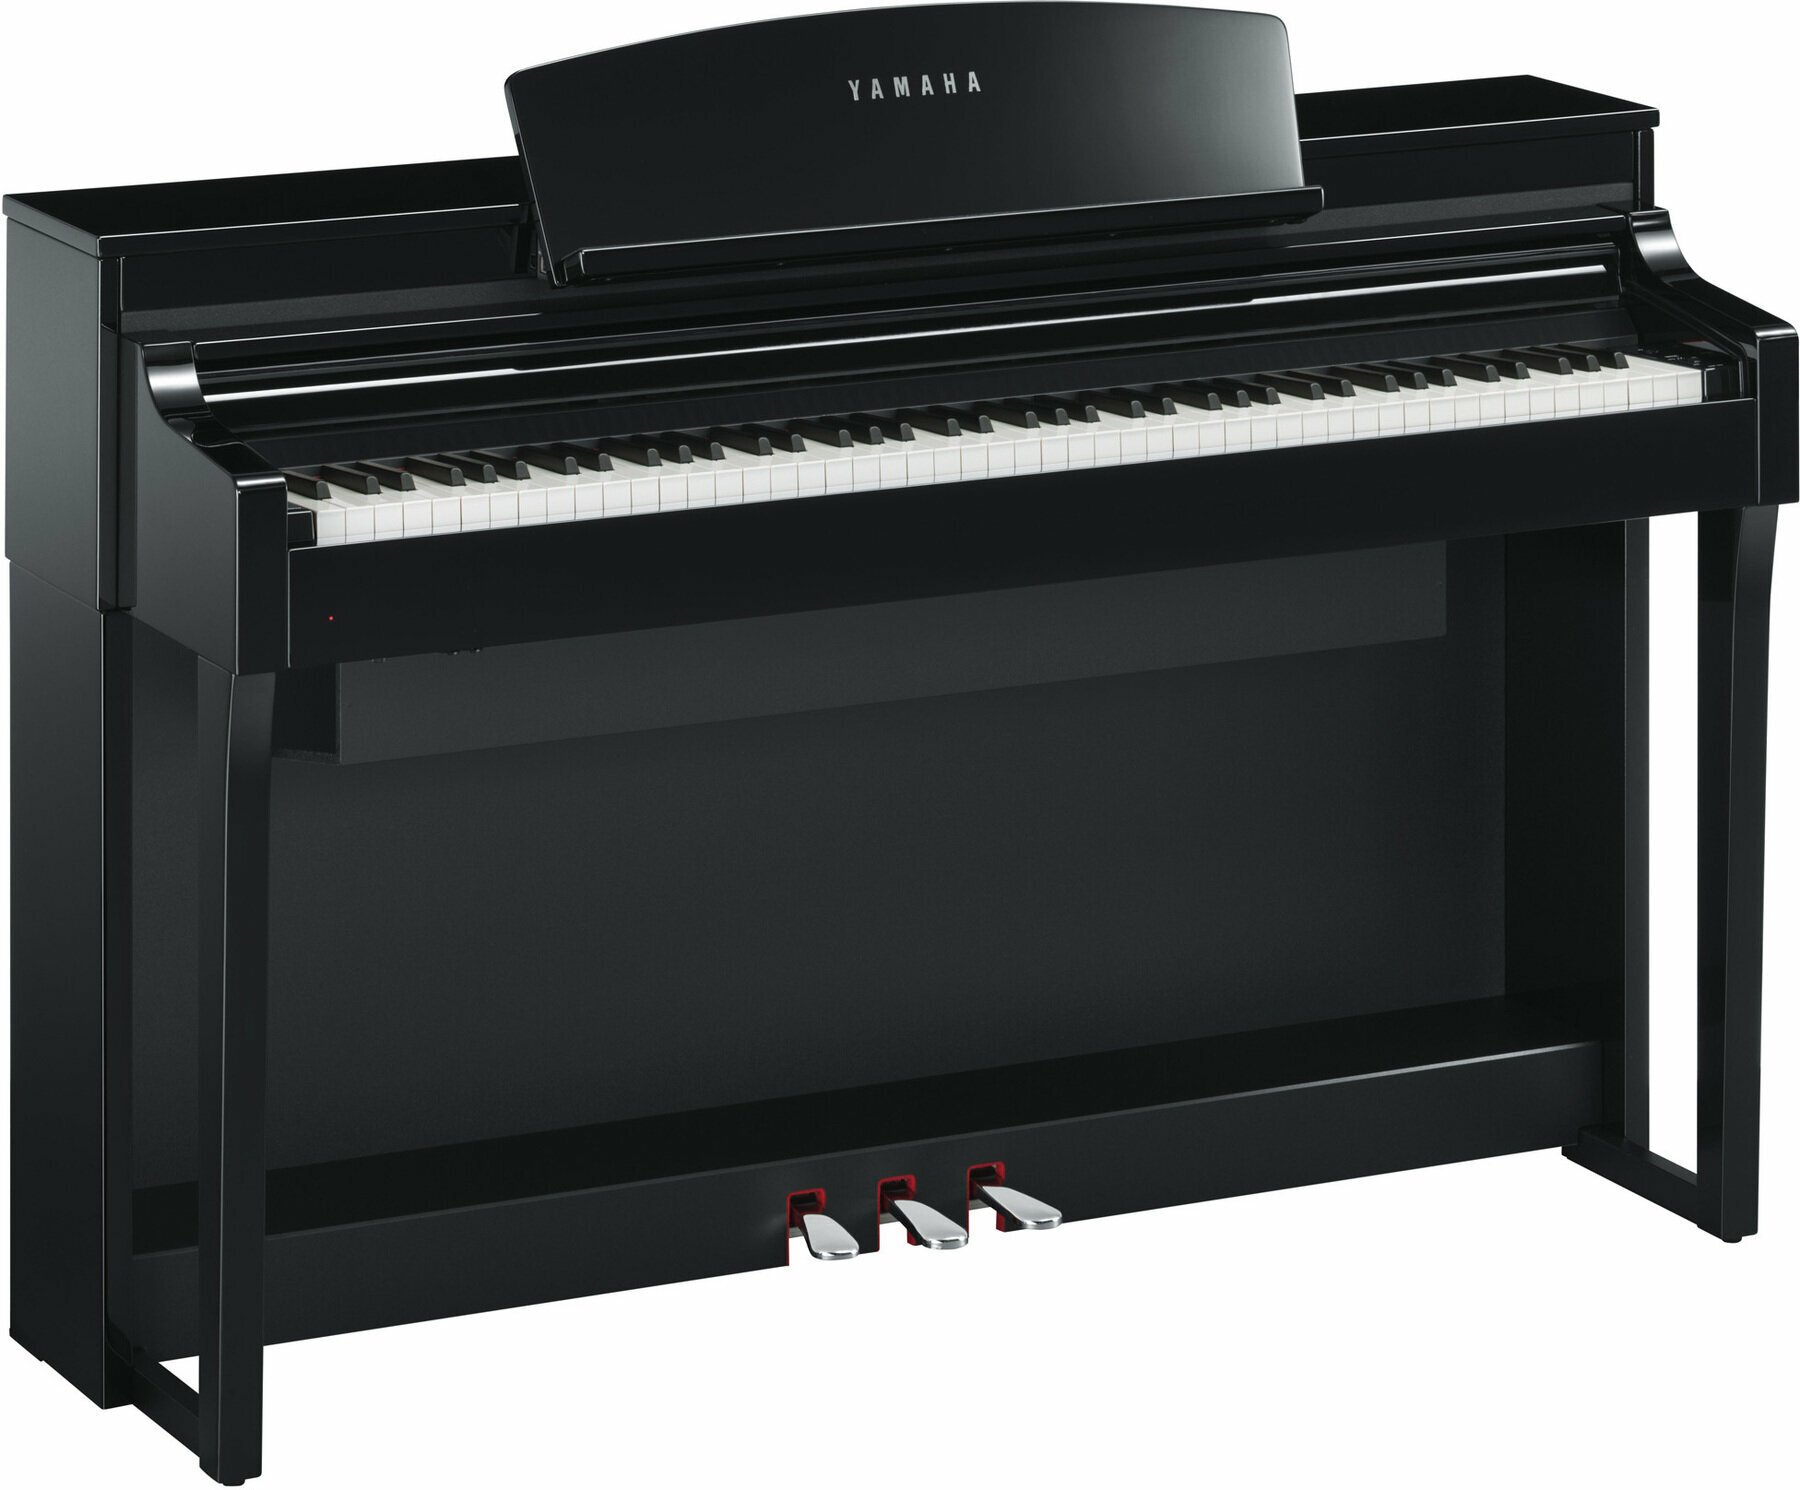 Piano digital Yamaha CSP 170 Polished Ebony Piano digital